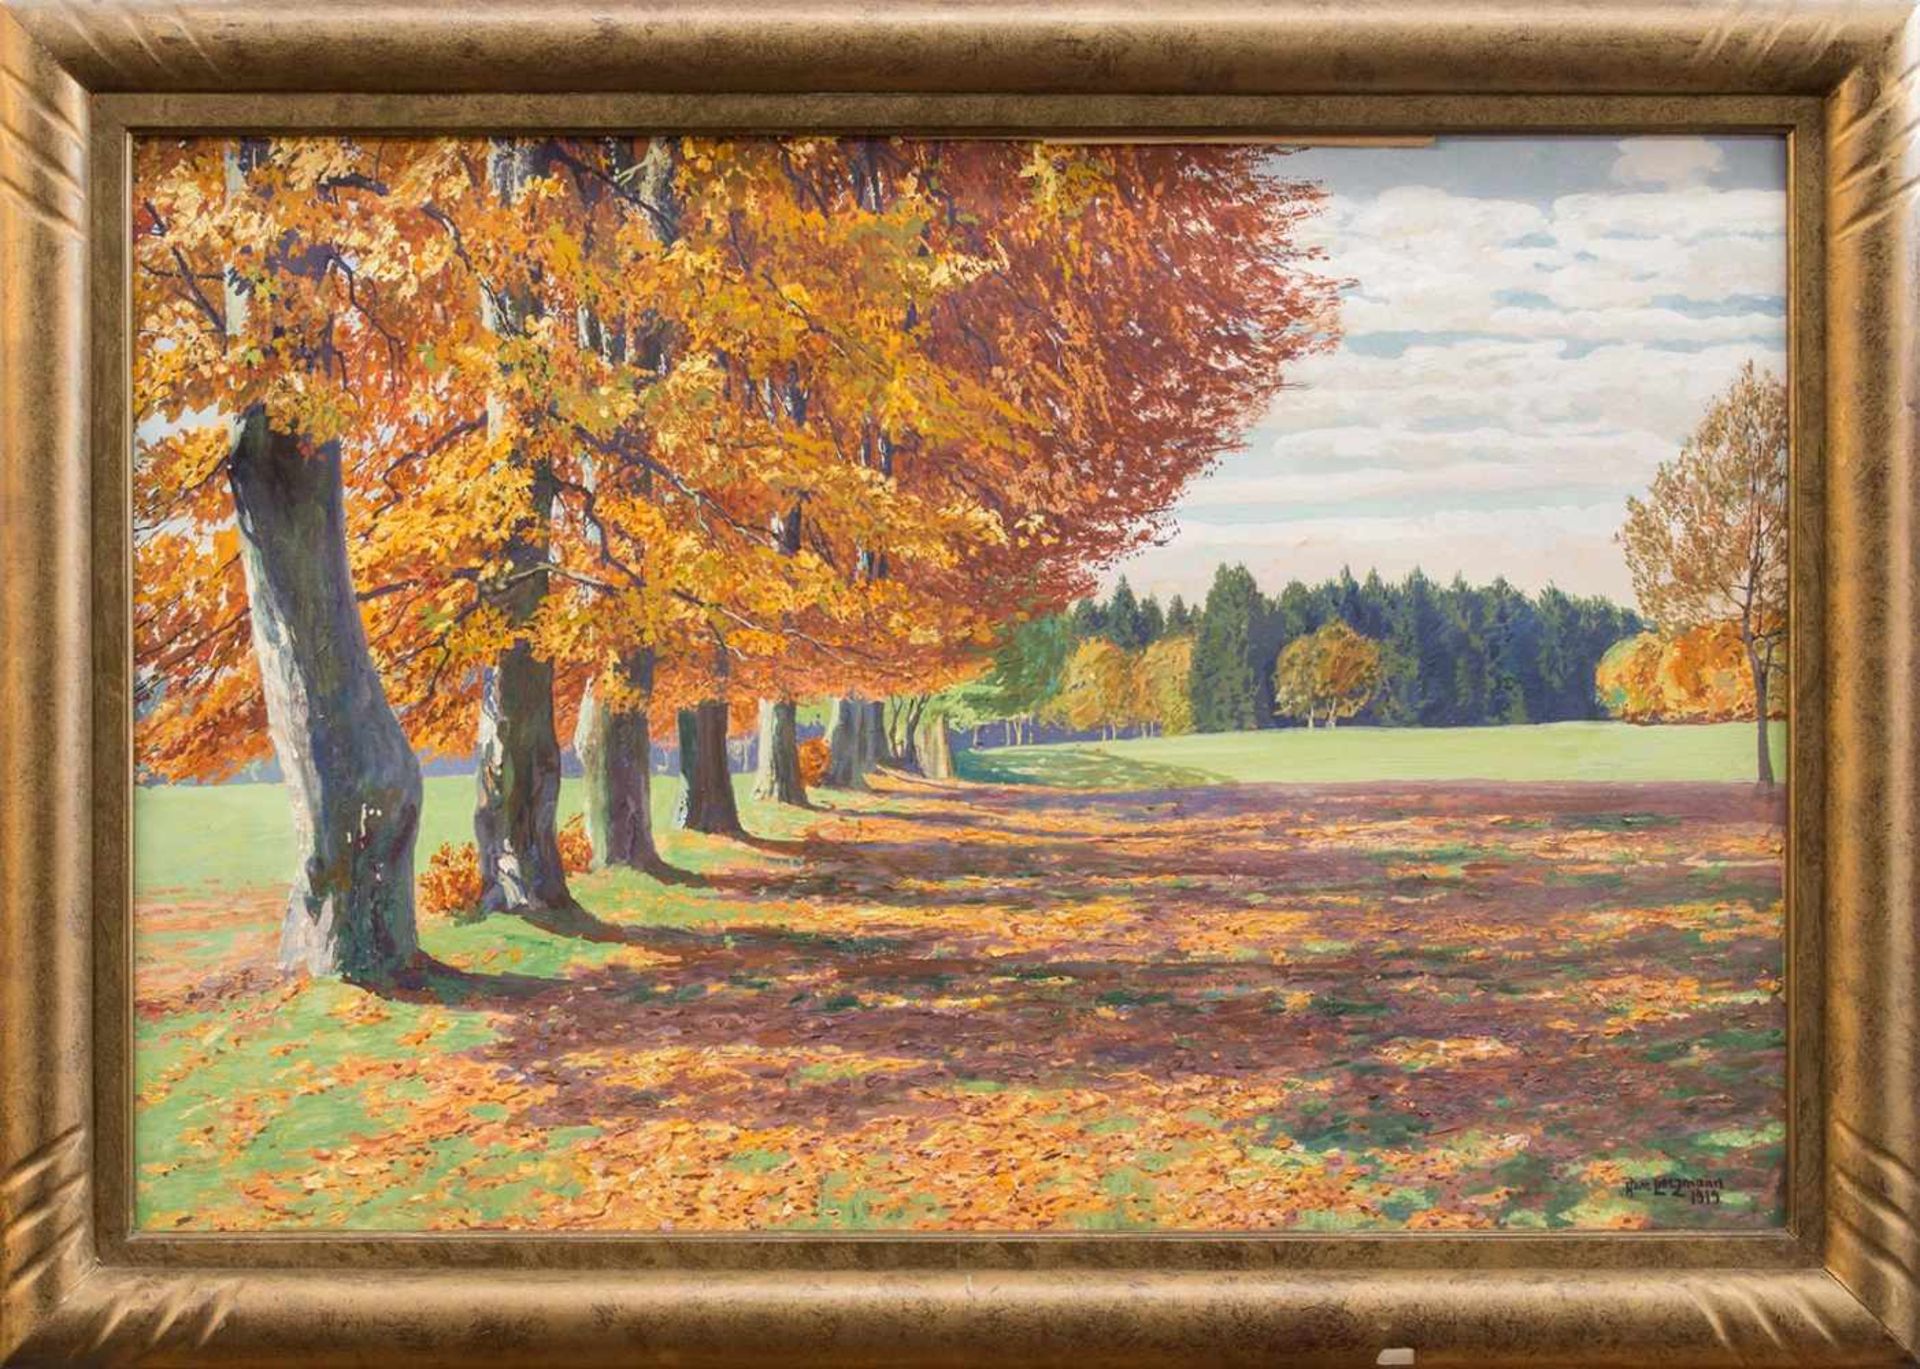 Hans Lietzmann(Berlin 1872 - 1955 Torbole, deutscher Maler u. Zeichner, Std. a.d. KA Berlin, lebte